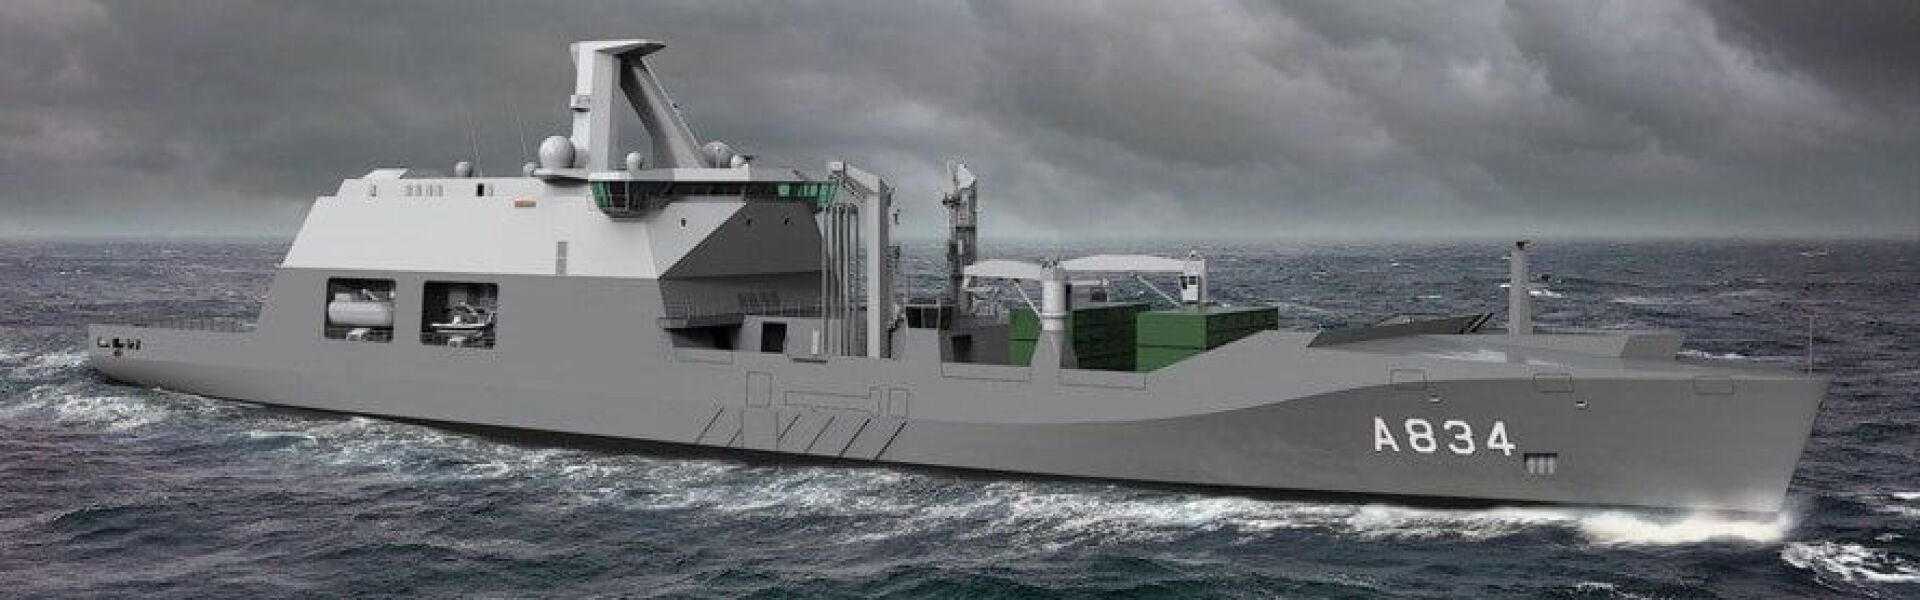 RAS Equipment for COMBAT Support Ship Zr Ms Den Helder